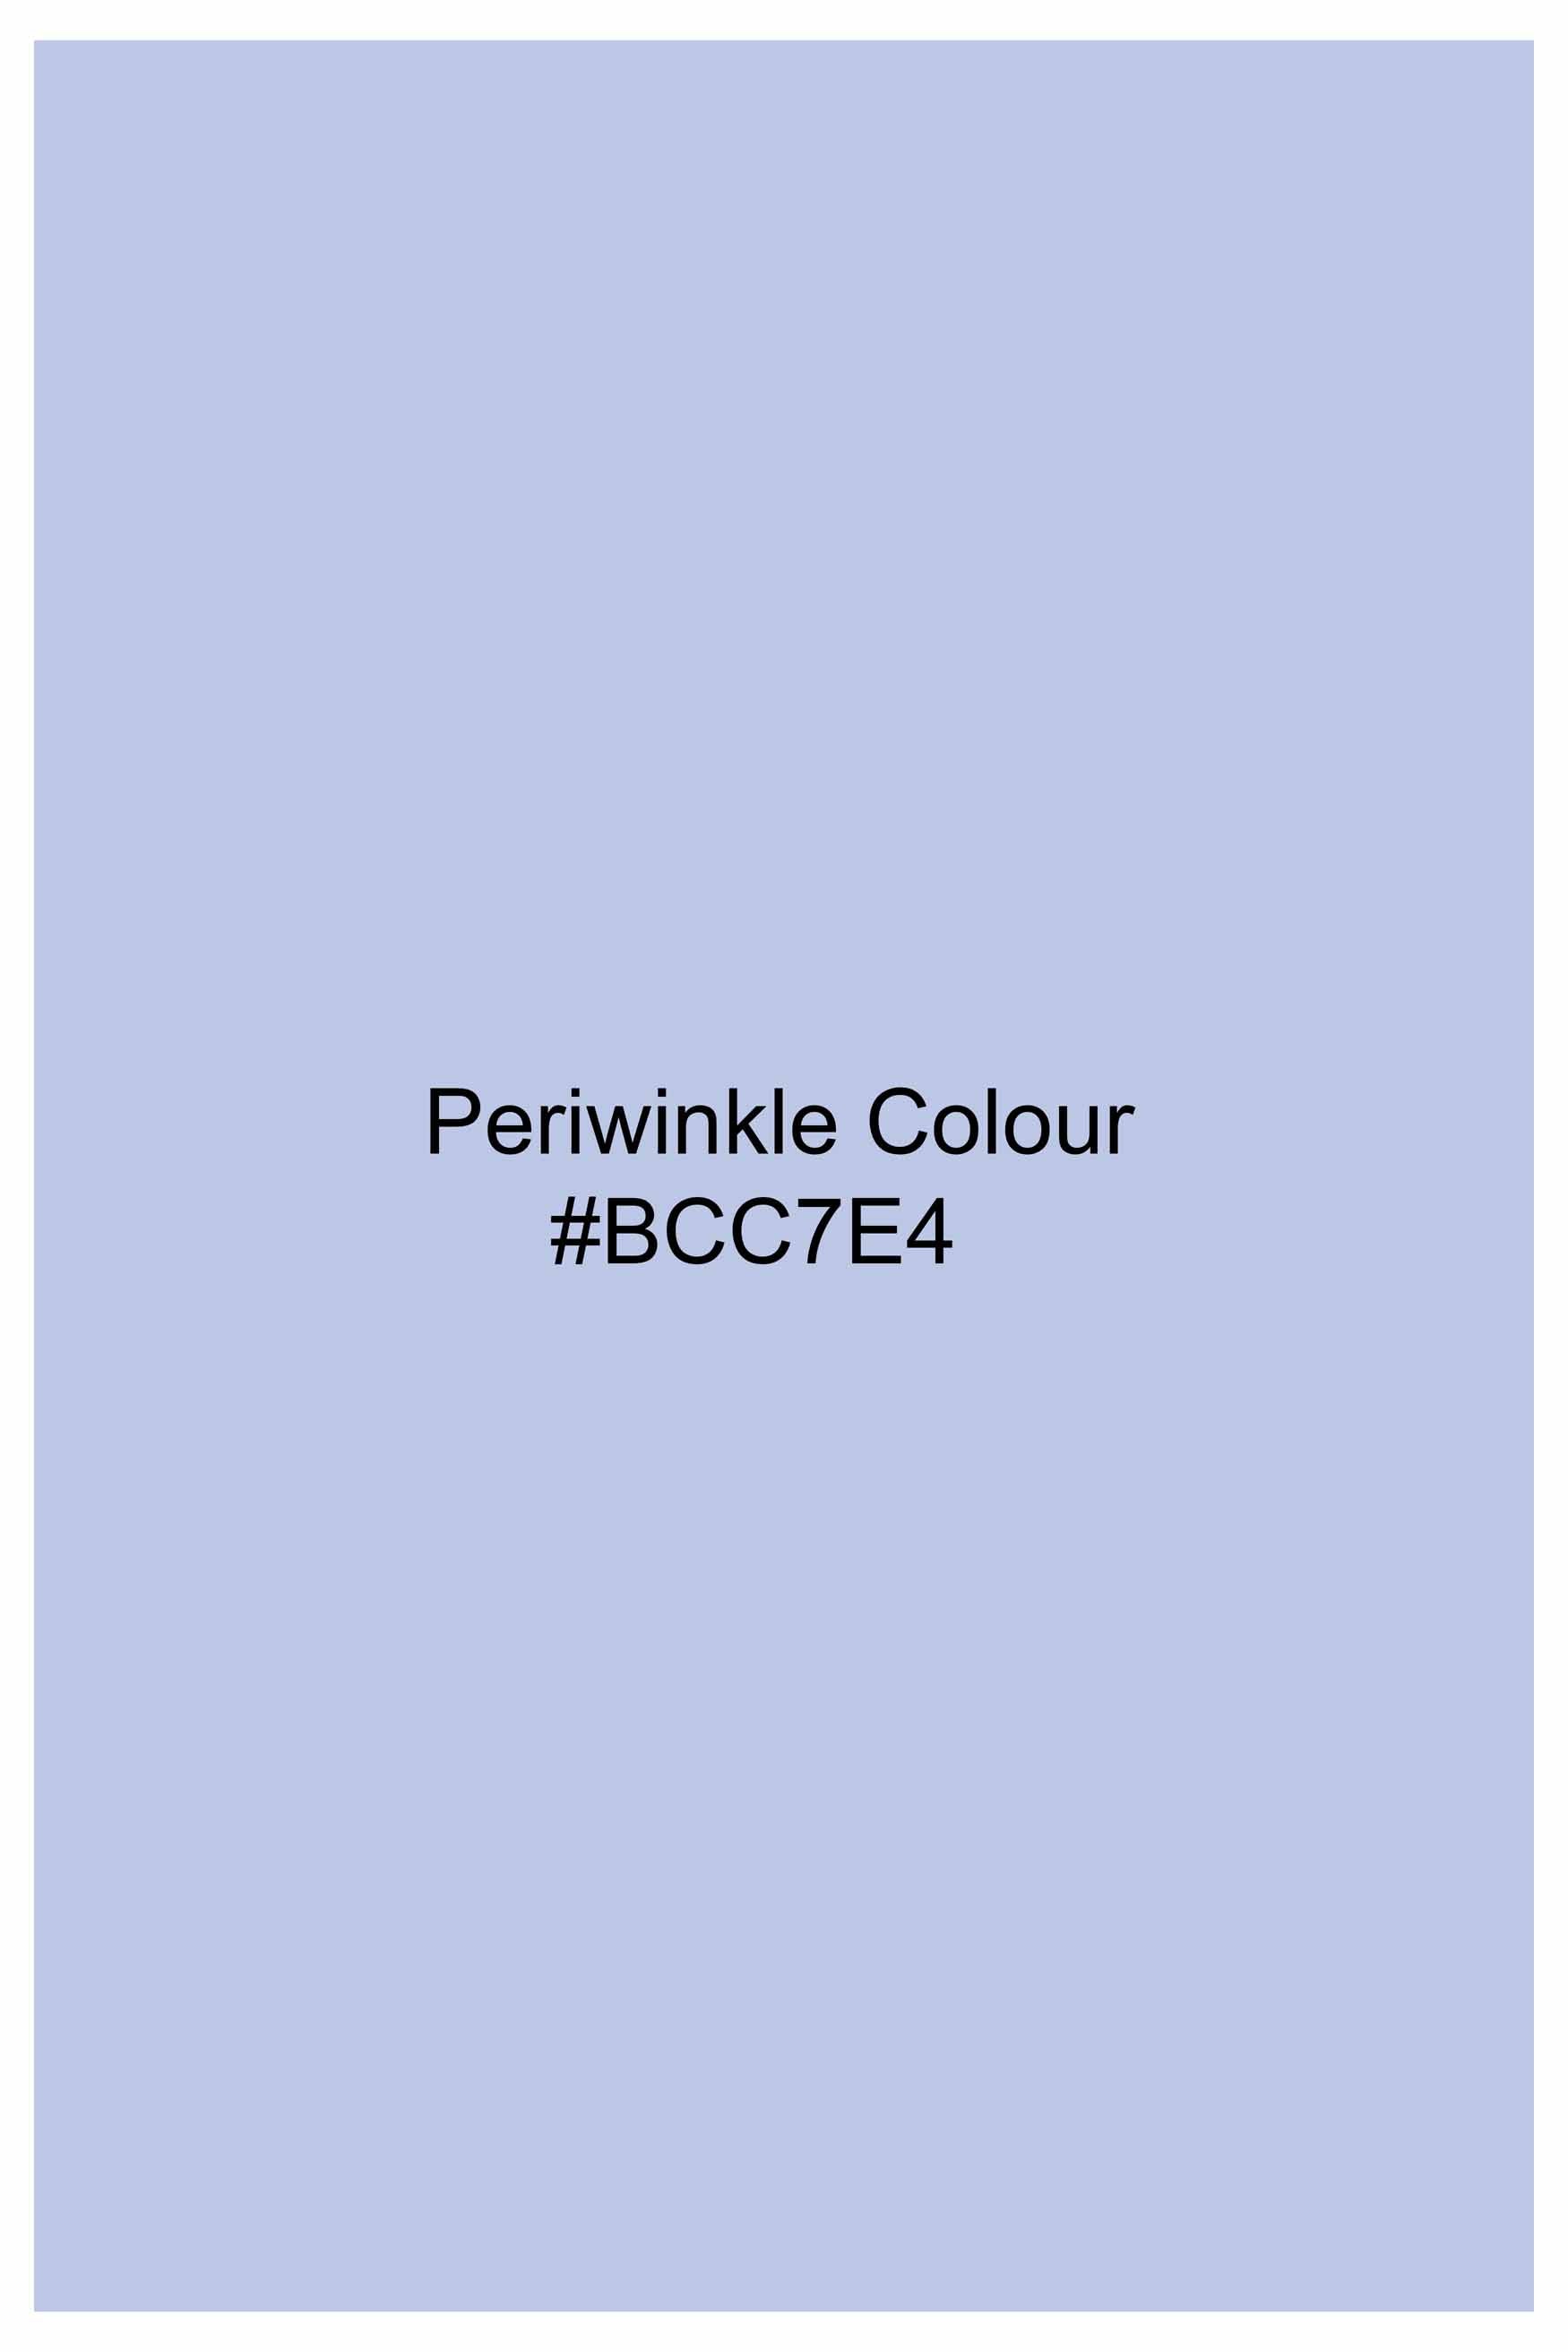 Periwinkle Blue Subtle Sheen Super Soft Premium Cotton Tuxedo Shirt